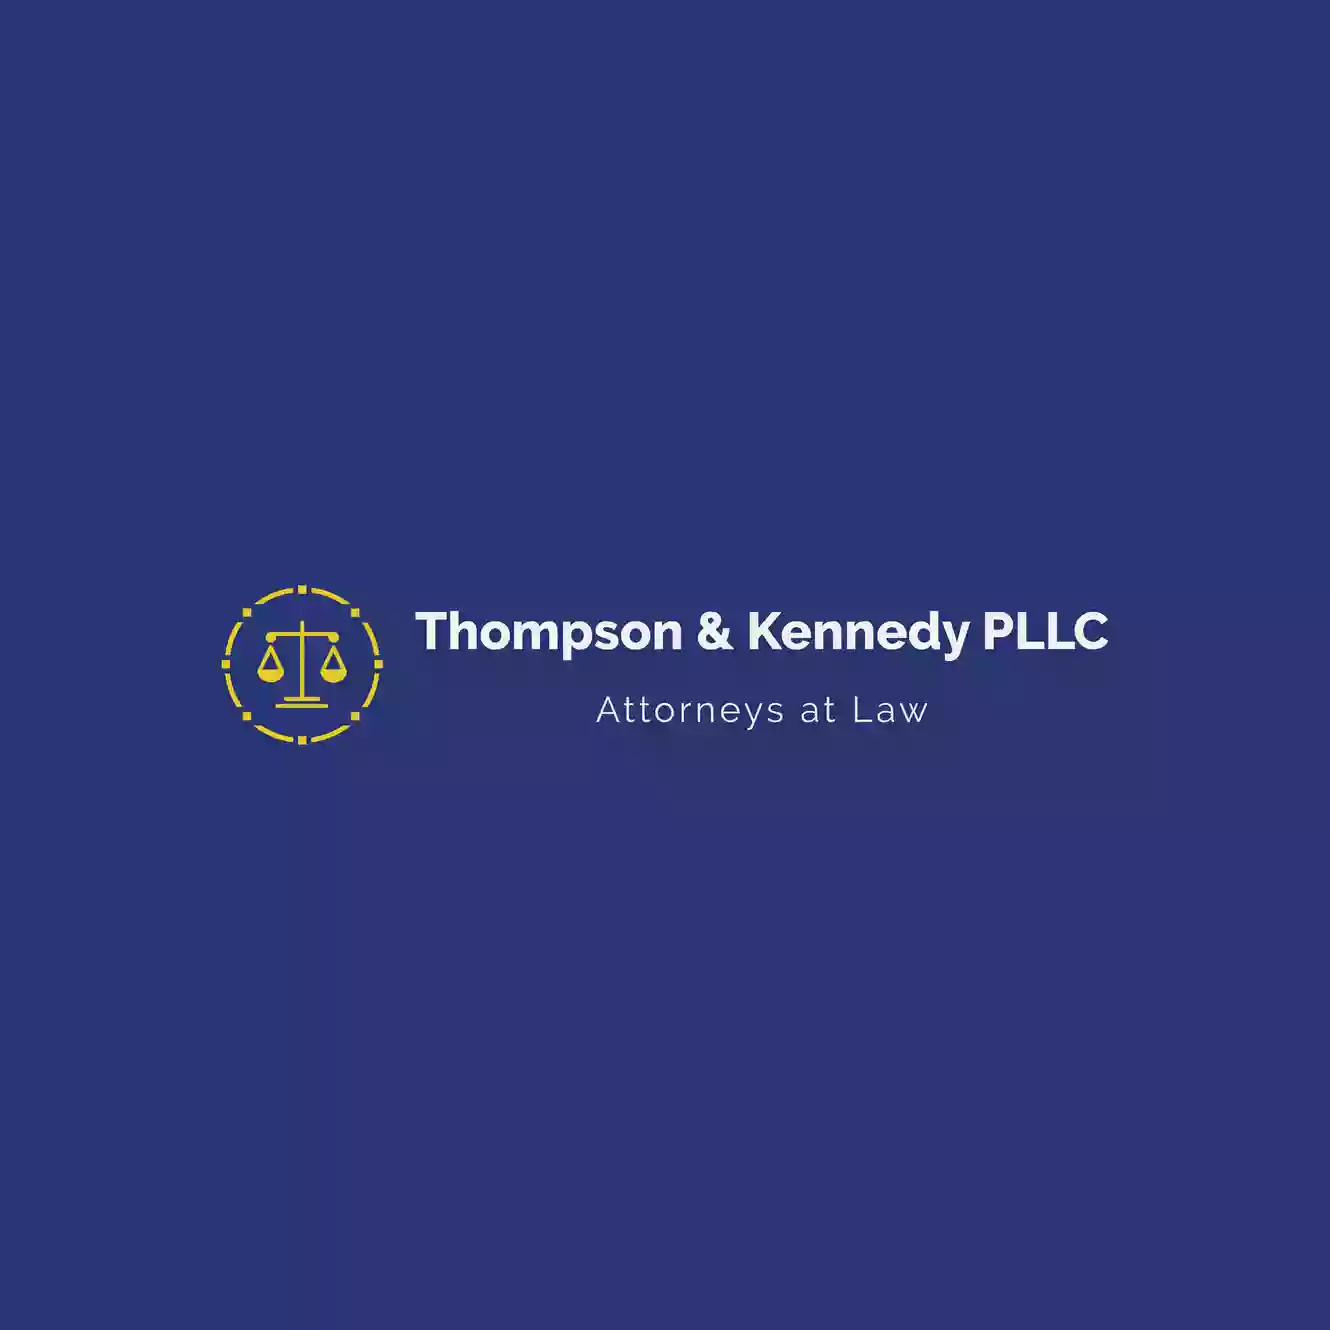 Thompson & Kennedy, PLLC